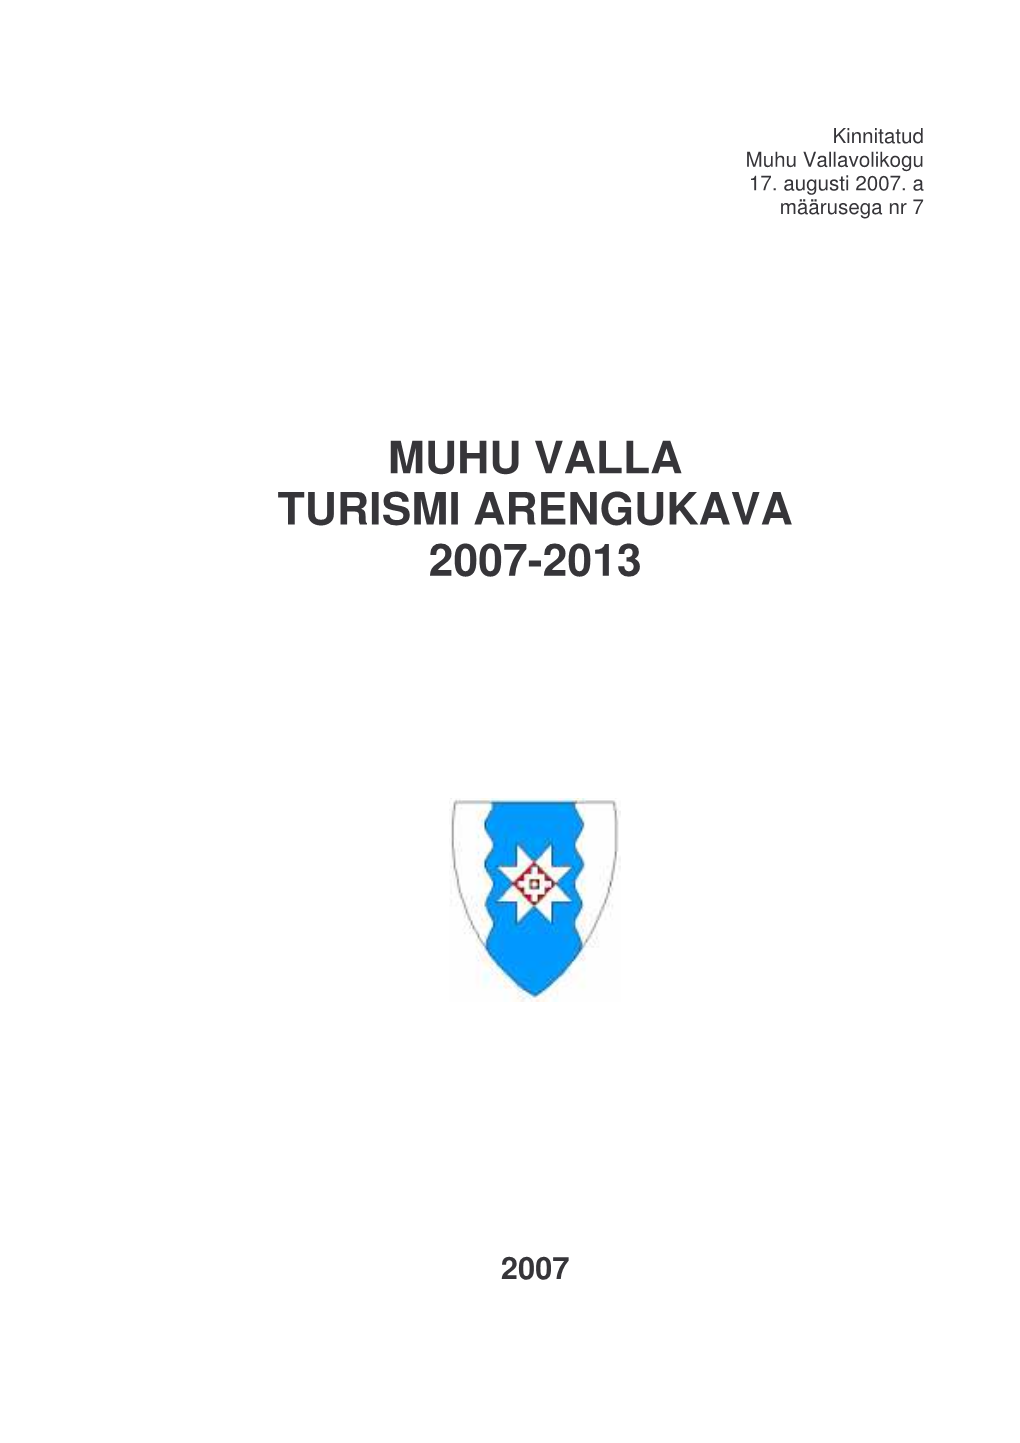 Muhu Valla Turismi Arengukava 2007-2013